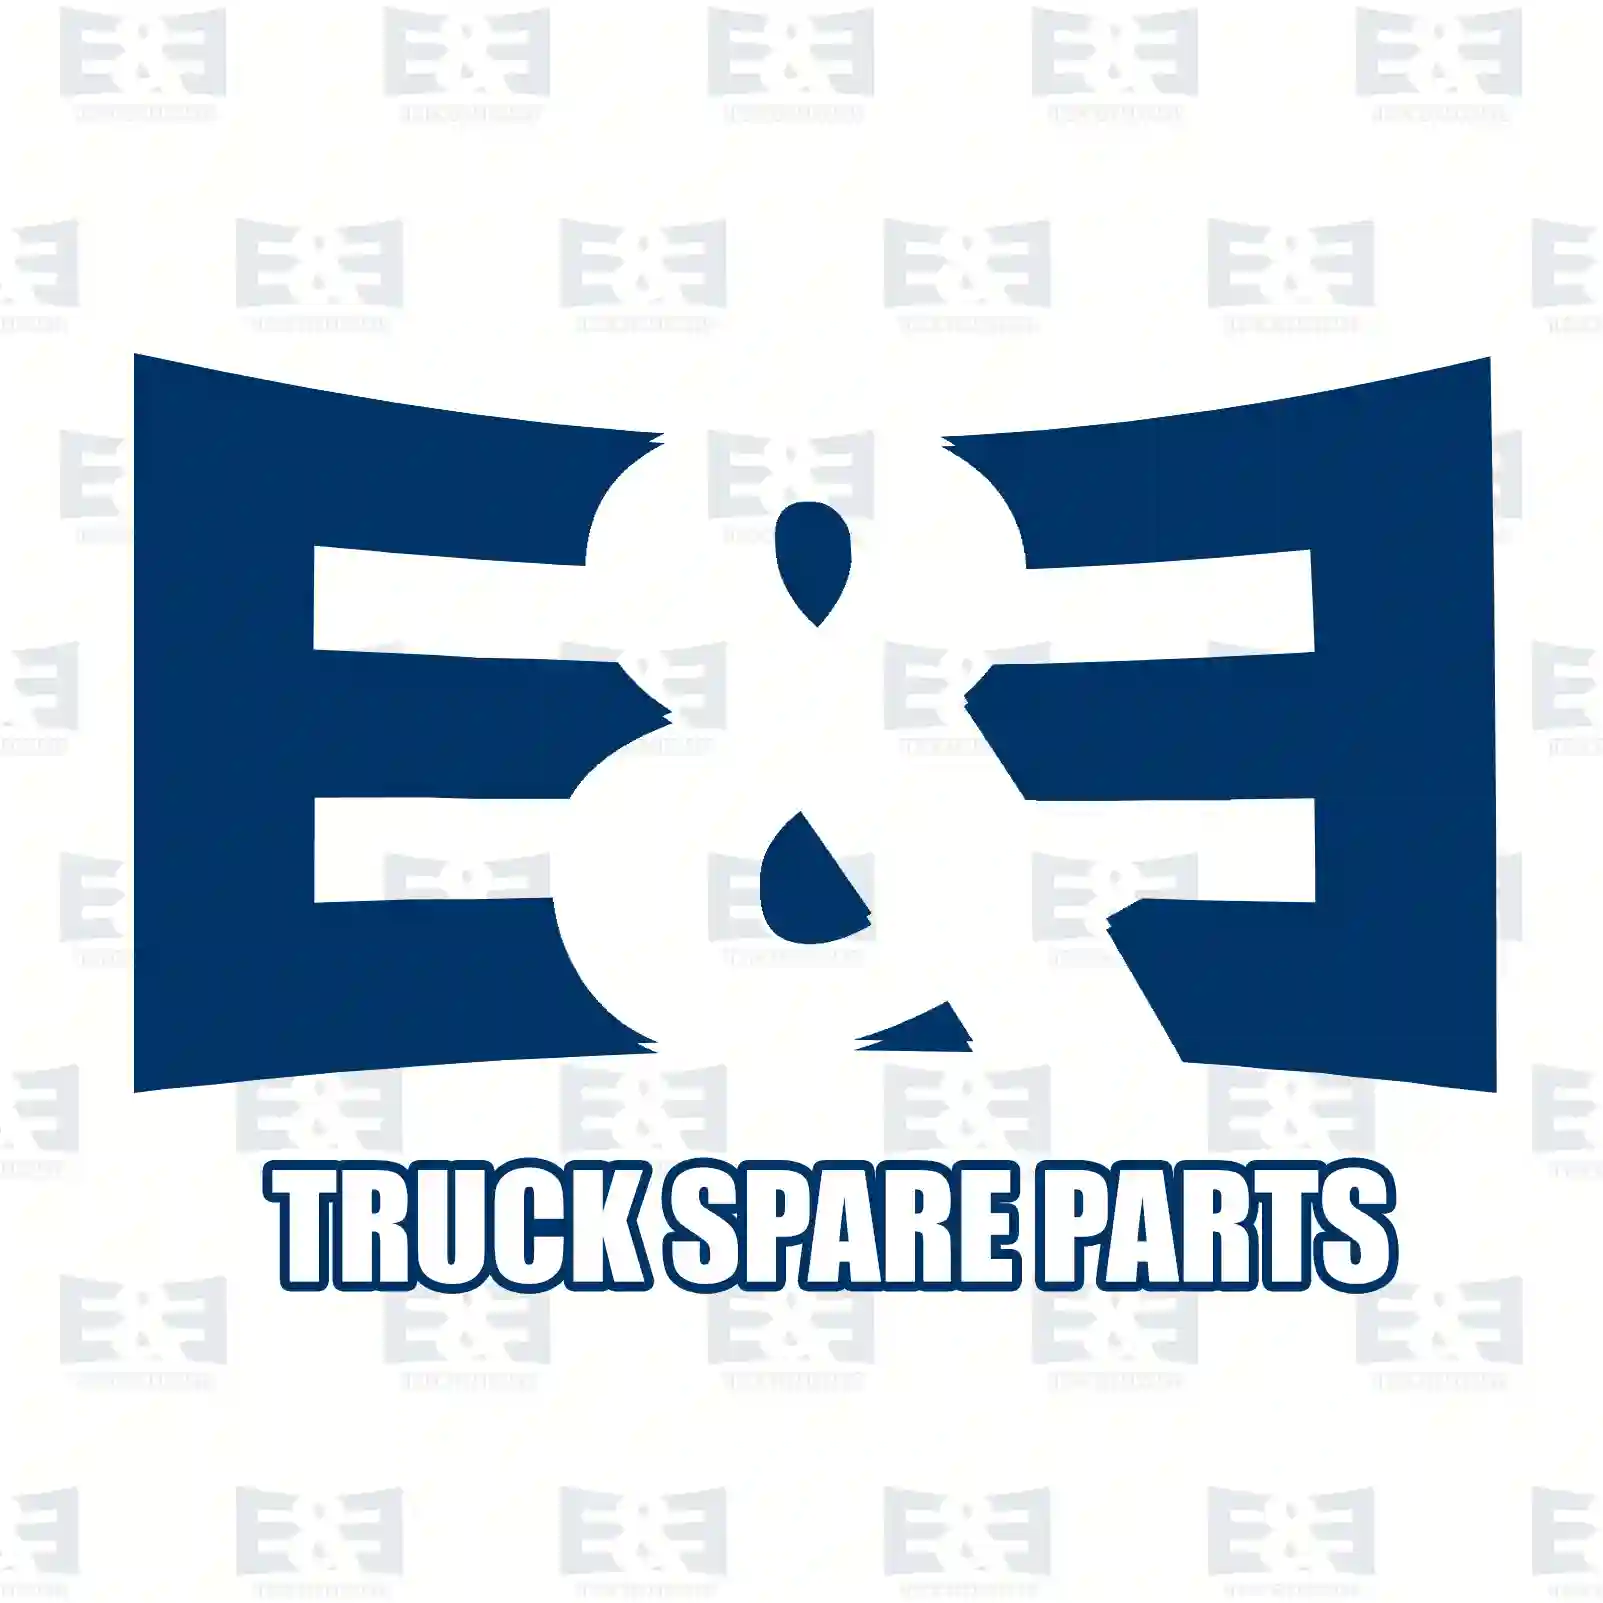 Radiator hose, 2E2277780, 1370488, 1797845, 2155439, ZG02444-0008 ||  2E2277780 E&E Truck Spare Parts | Truck Spare Parts, Auotomotive Spare Parts Radiator hose, 2E2277780, 1370488, 1797845, 2155439, ZG02444-0008 ||  2E2277780 E&E Truck Spare Parts | Truck Spare Parts, Auotomotive Spare Parts